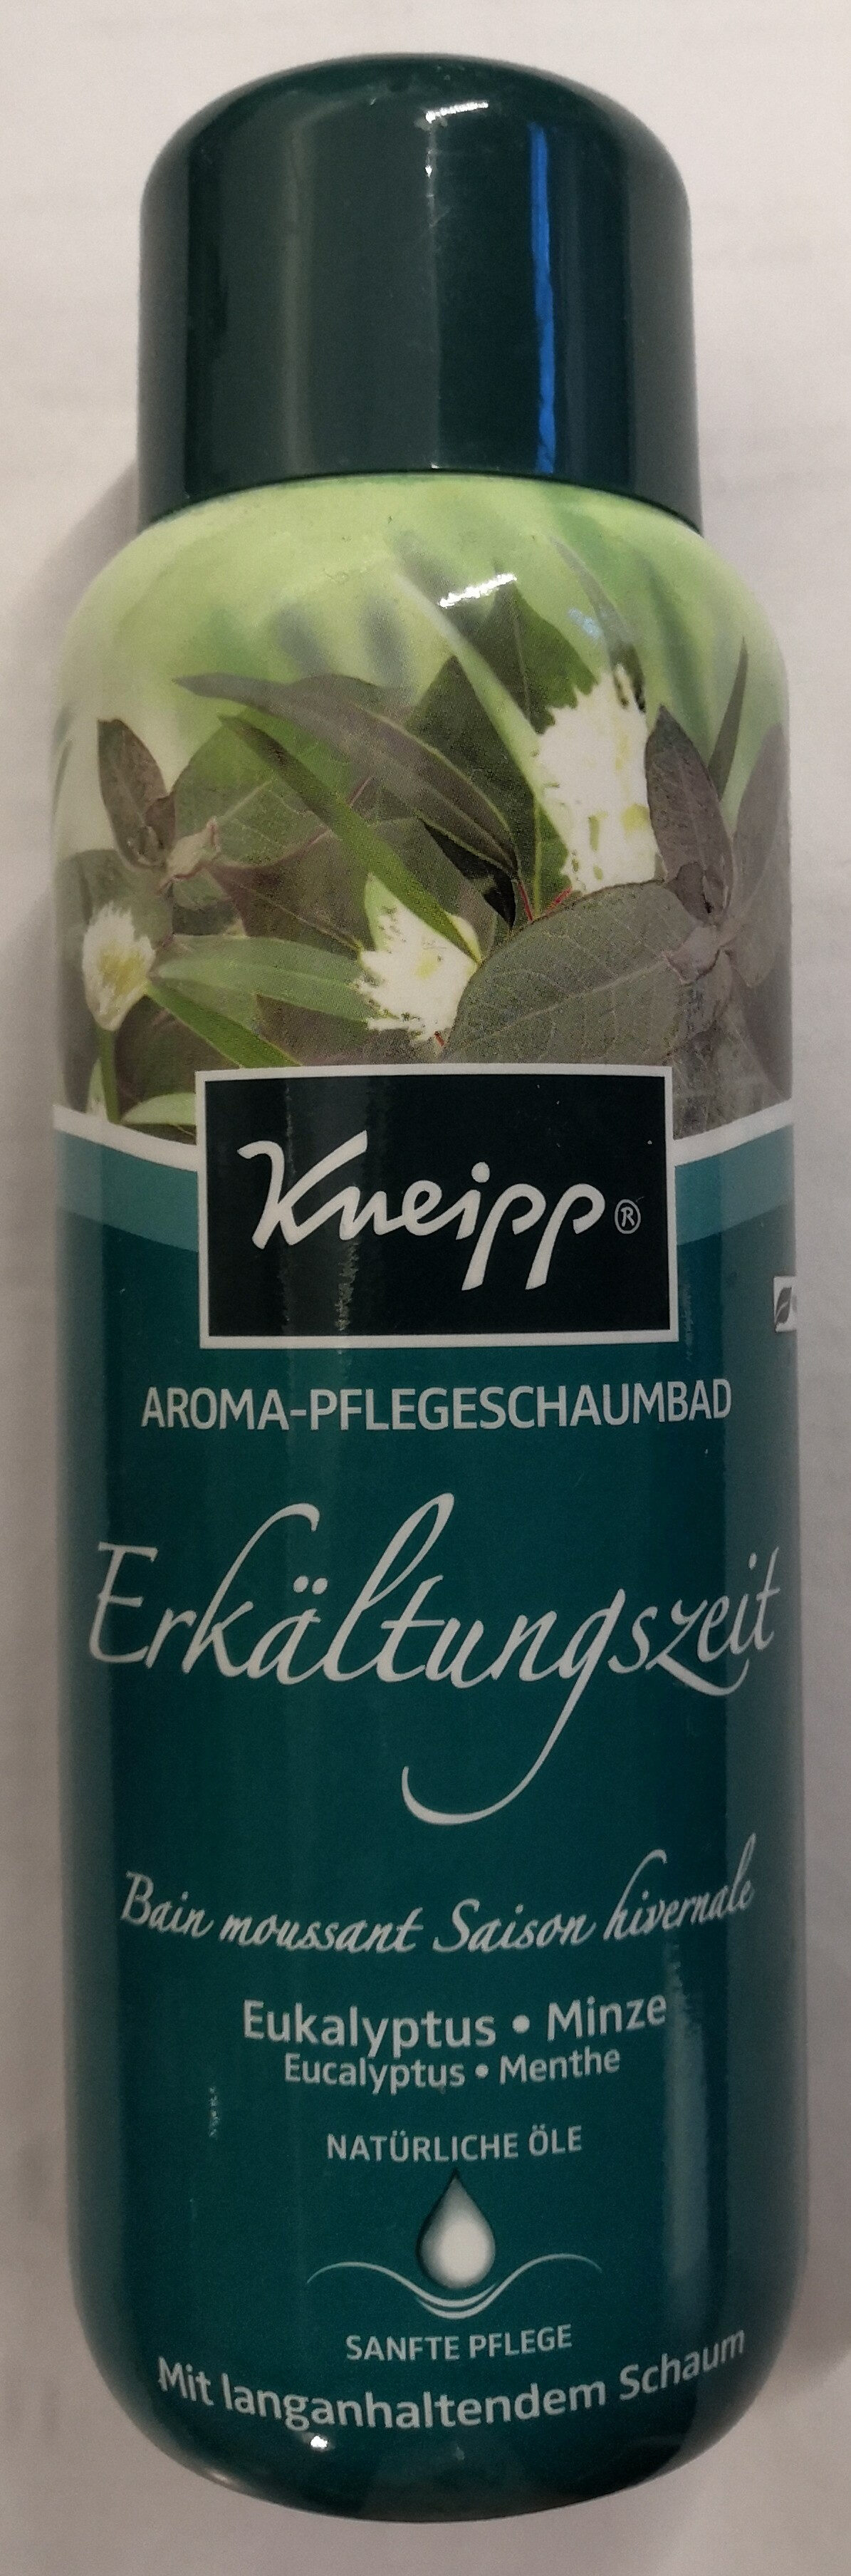 Aroma-Pflegeschaumbad Erkältungszeit Eukalyptus-Minze - 製品 - de